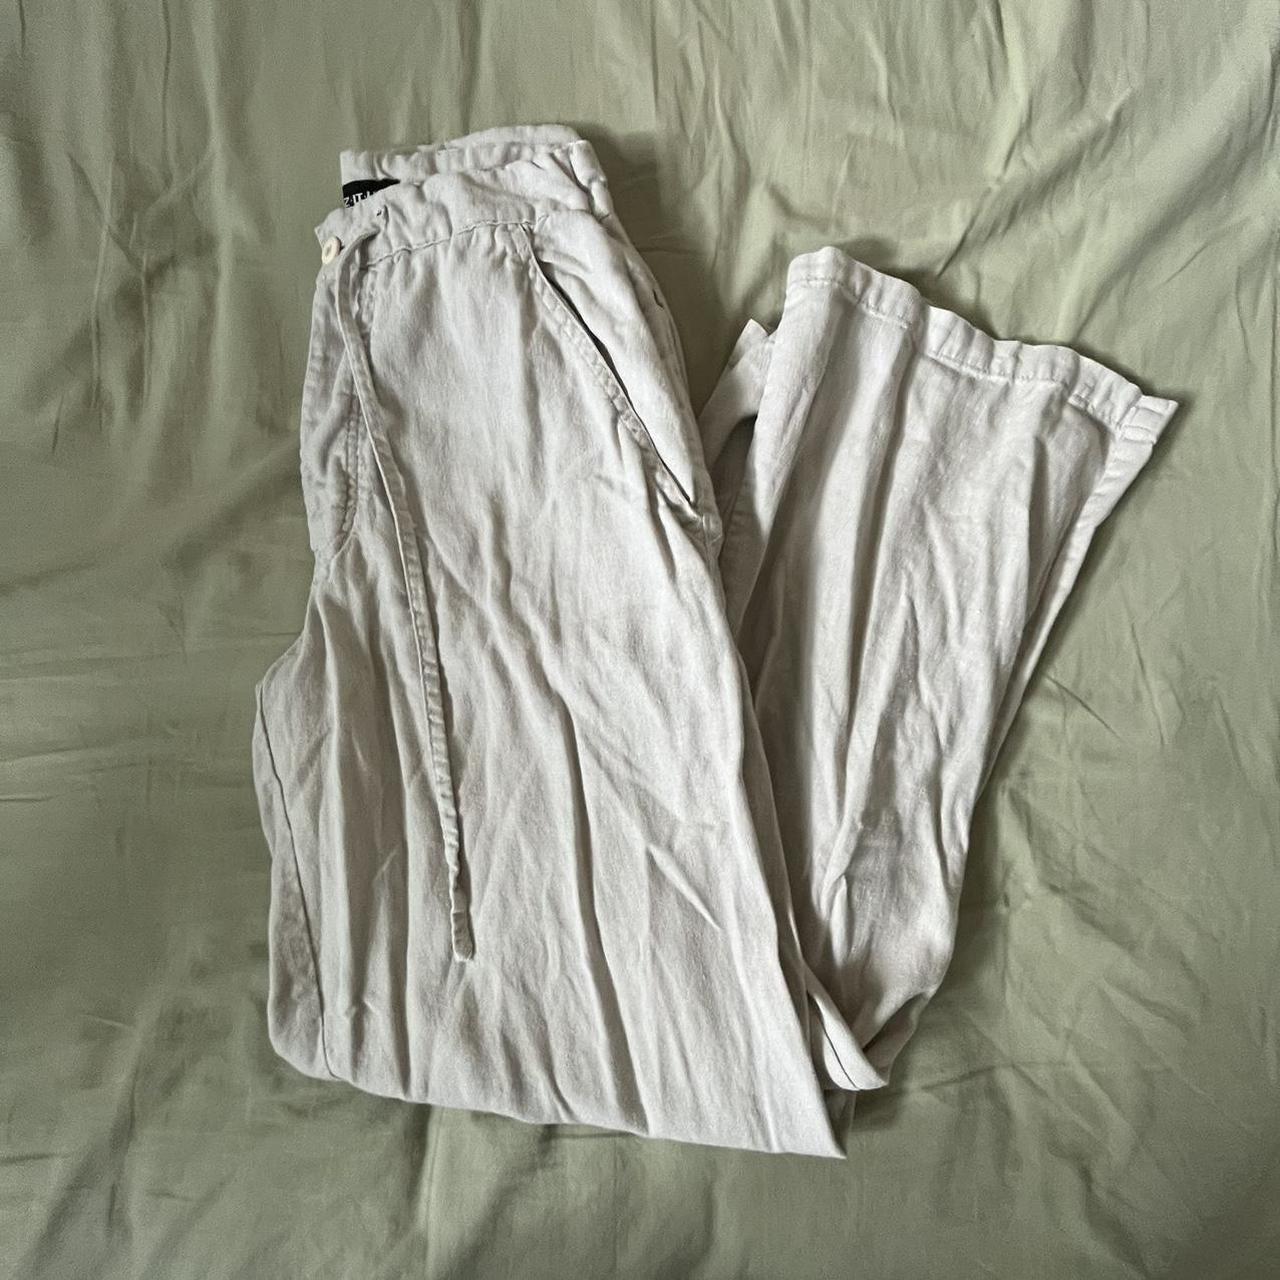 Women's Trousers | Depop